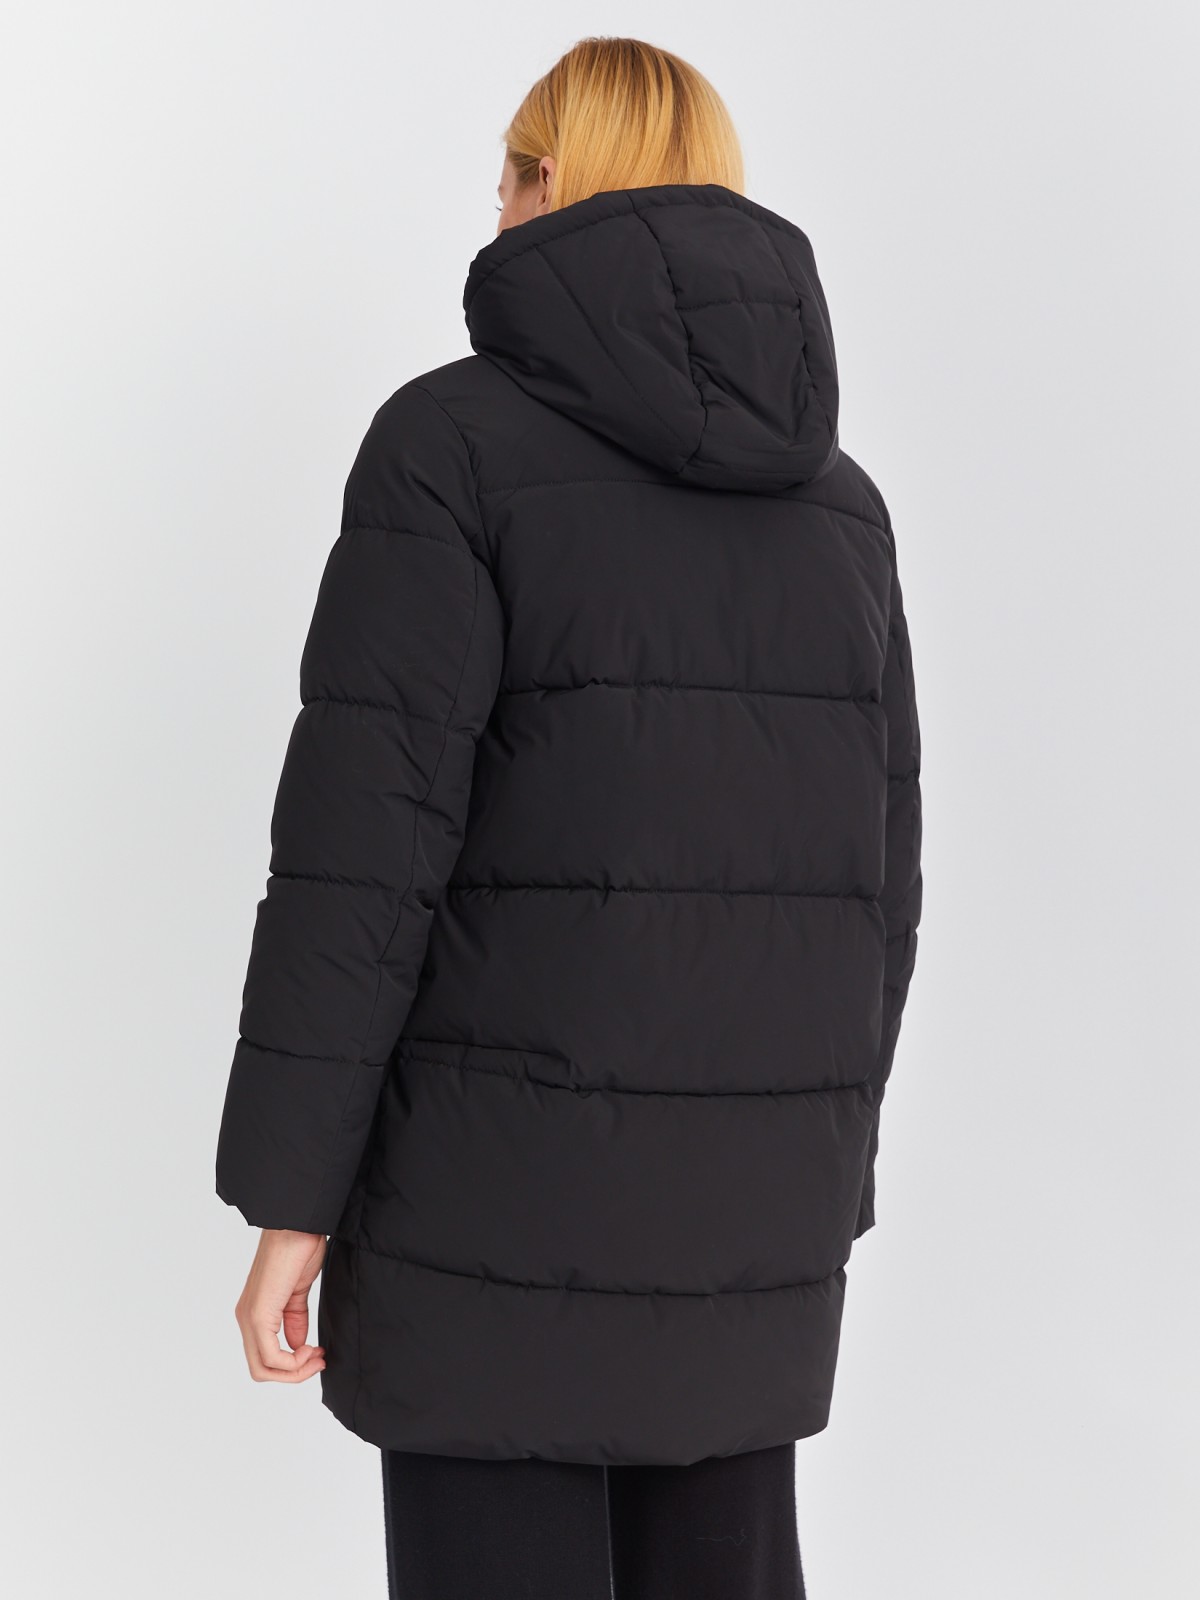 Тёплая стёганая куртка-пальто с капюшоном